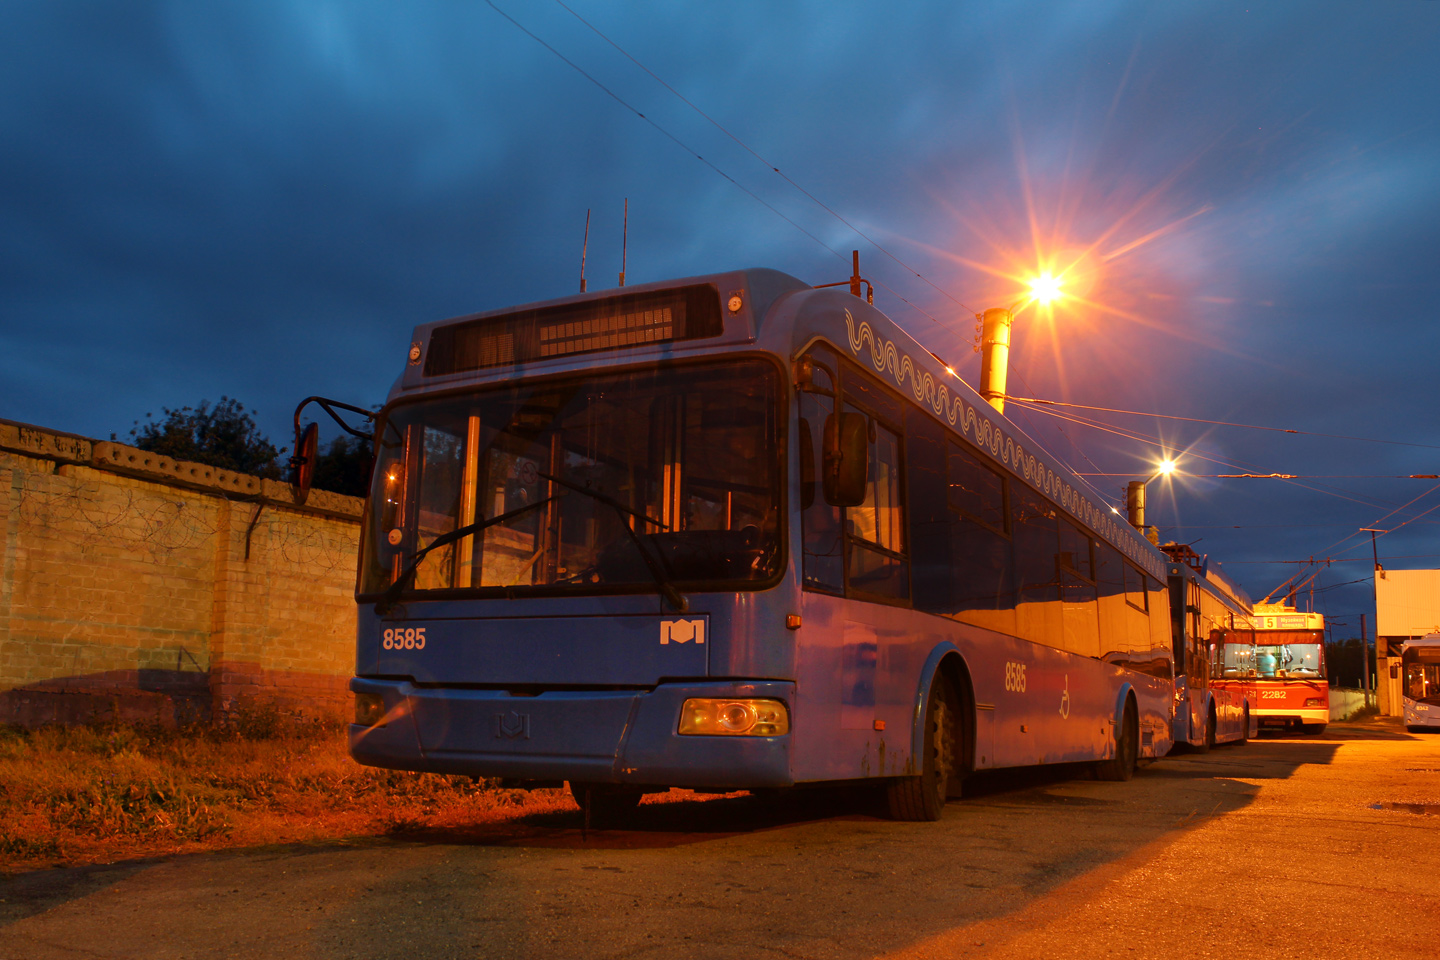 Саратов, БКМ 321 № 8585; Саратов — Поставка троллейбусов из Москвы — 2020